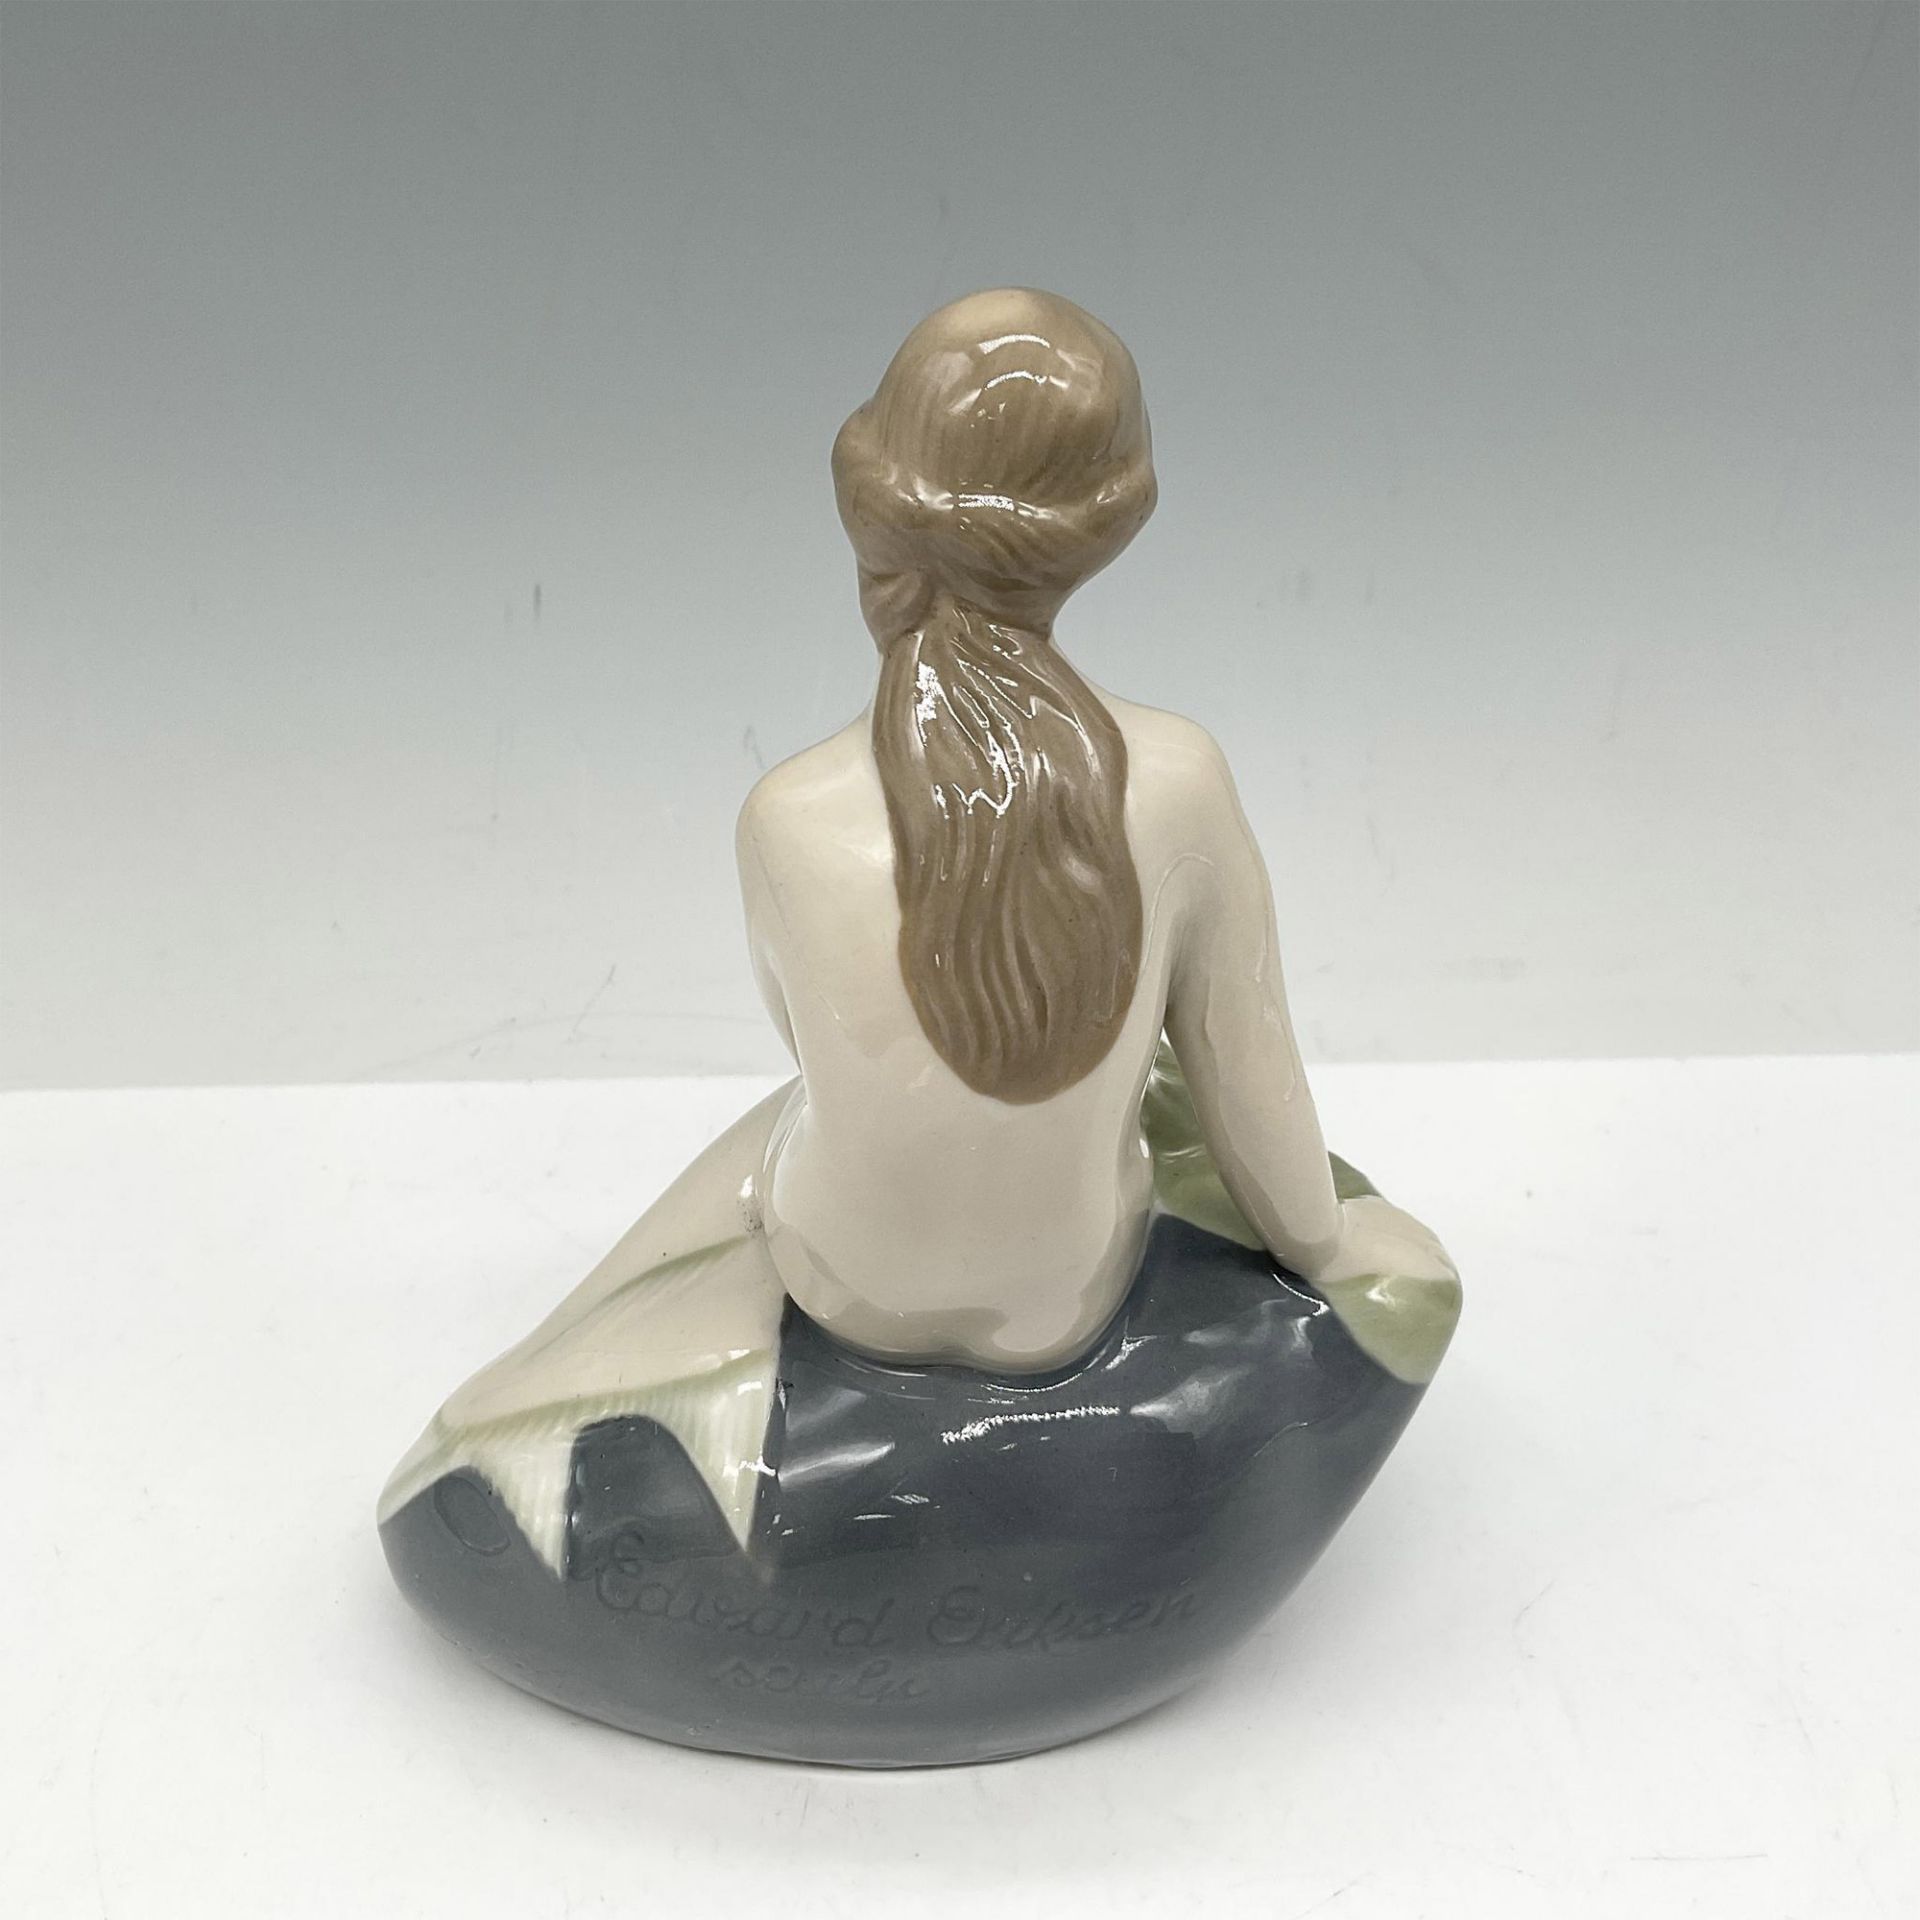 Lippelsdorf Porcelain Figurine, Little Mermaid - Image 2 of 3